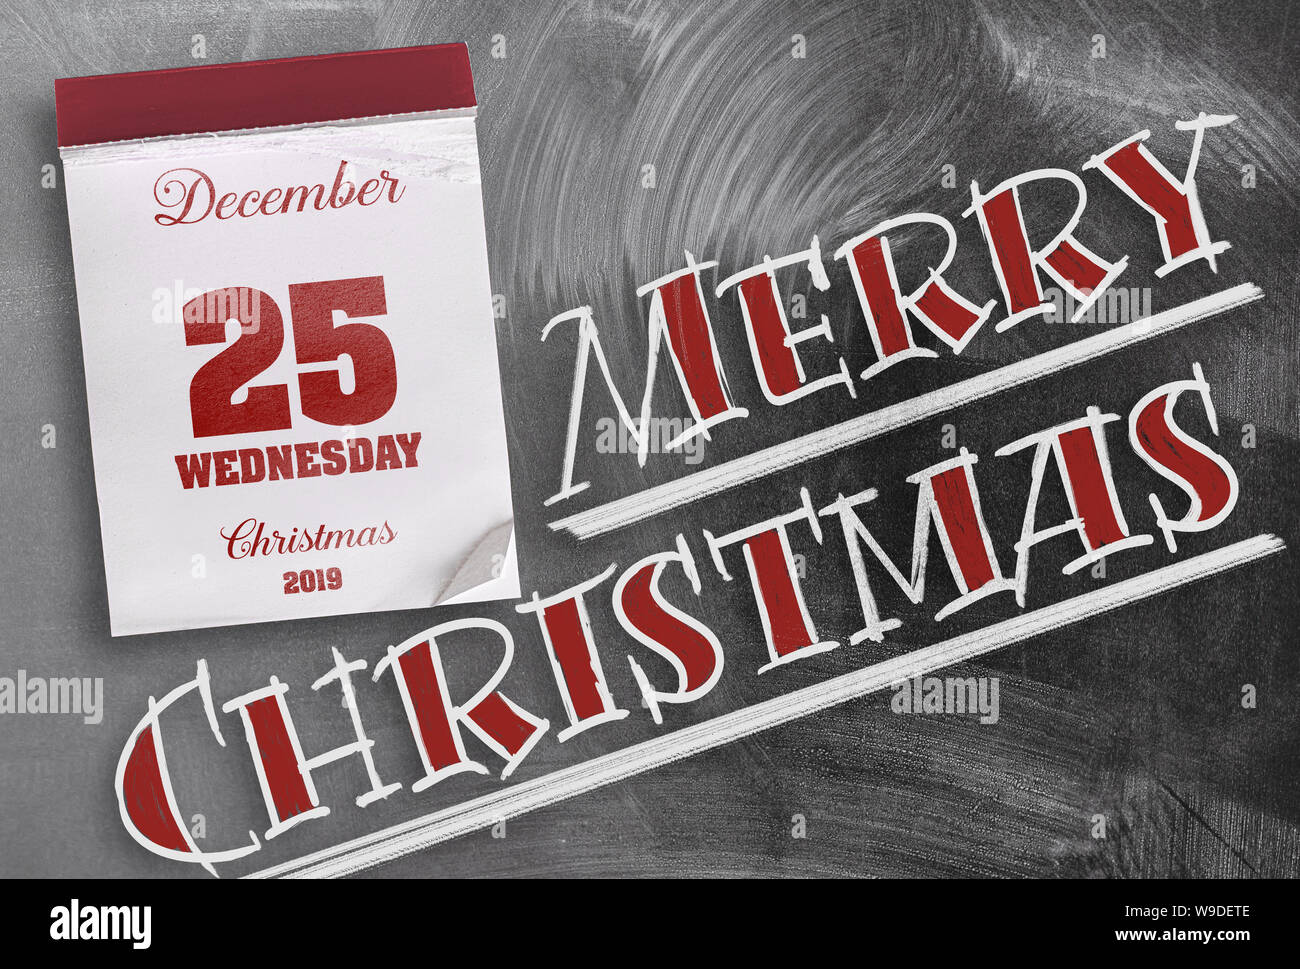 Wörter Frohe Weihnachten auf Schiefertafel mit Tear-off Kalender am 25. Dezember Stockfoto